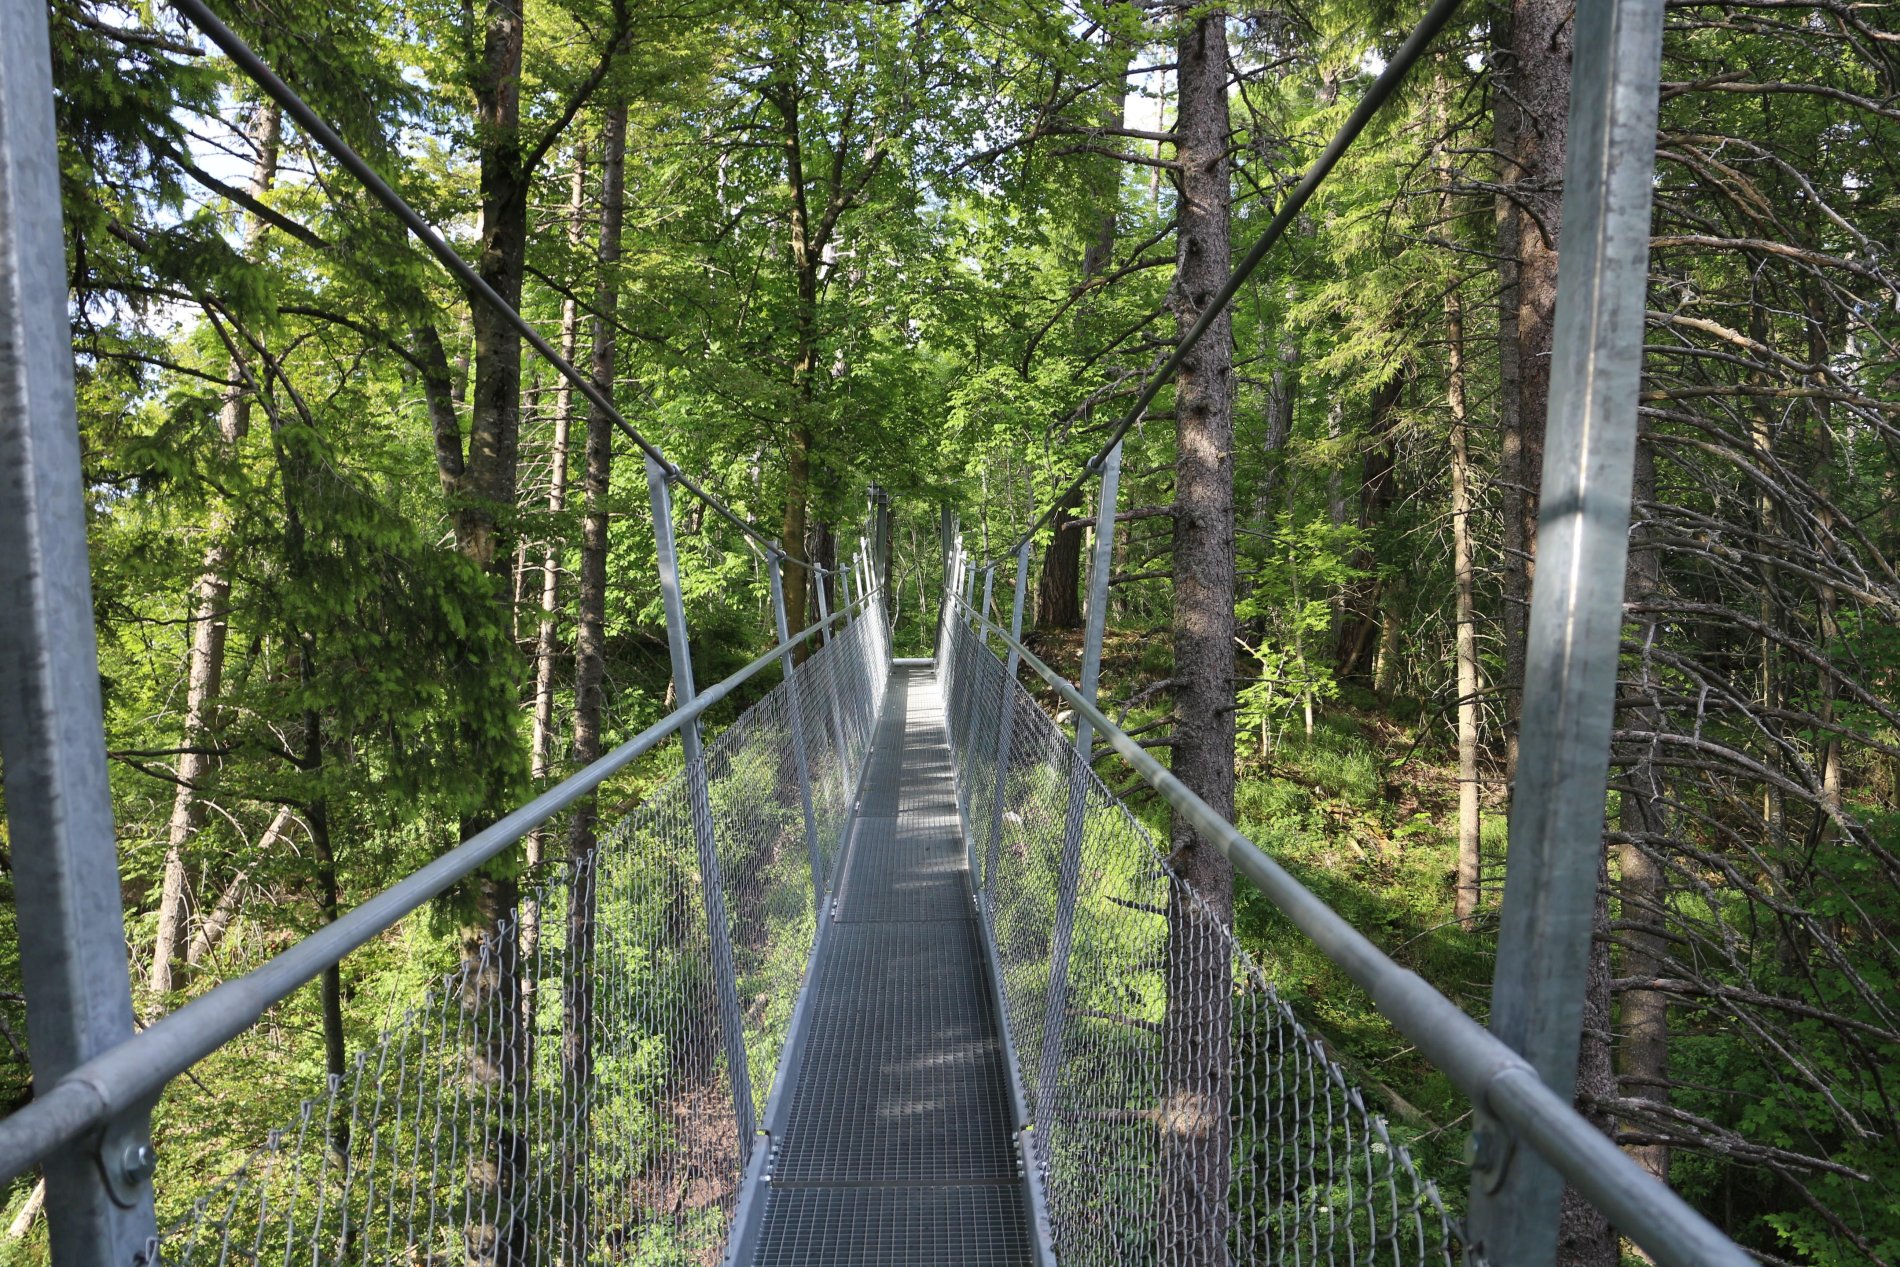 Hängebrücke aus Metall am Oberhohenberg